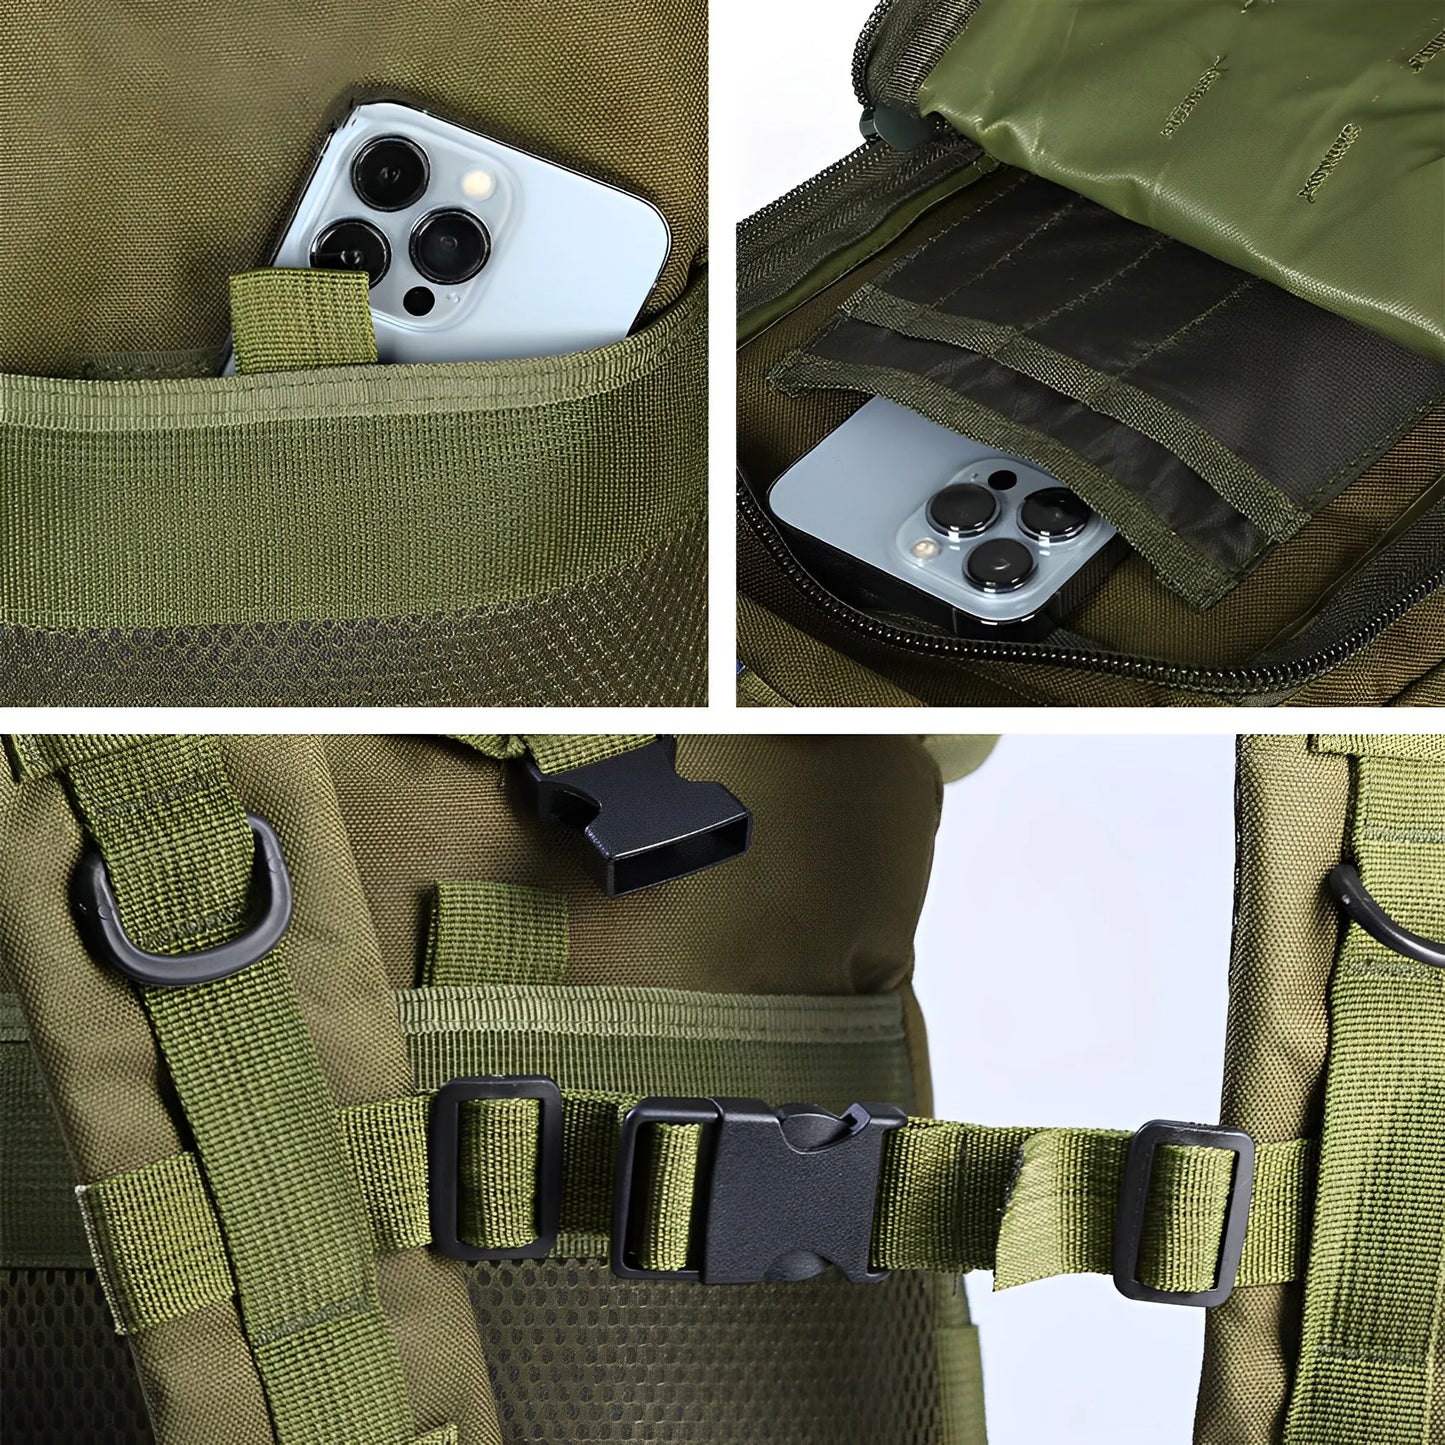 Syzm 50L ou 30l Backpack Backpack Saco de caça à caça a Molle Mackpack For Men Sacos de pesca com caminhadas ao ar livre